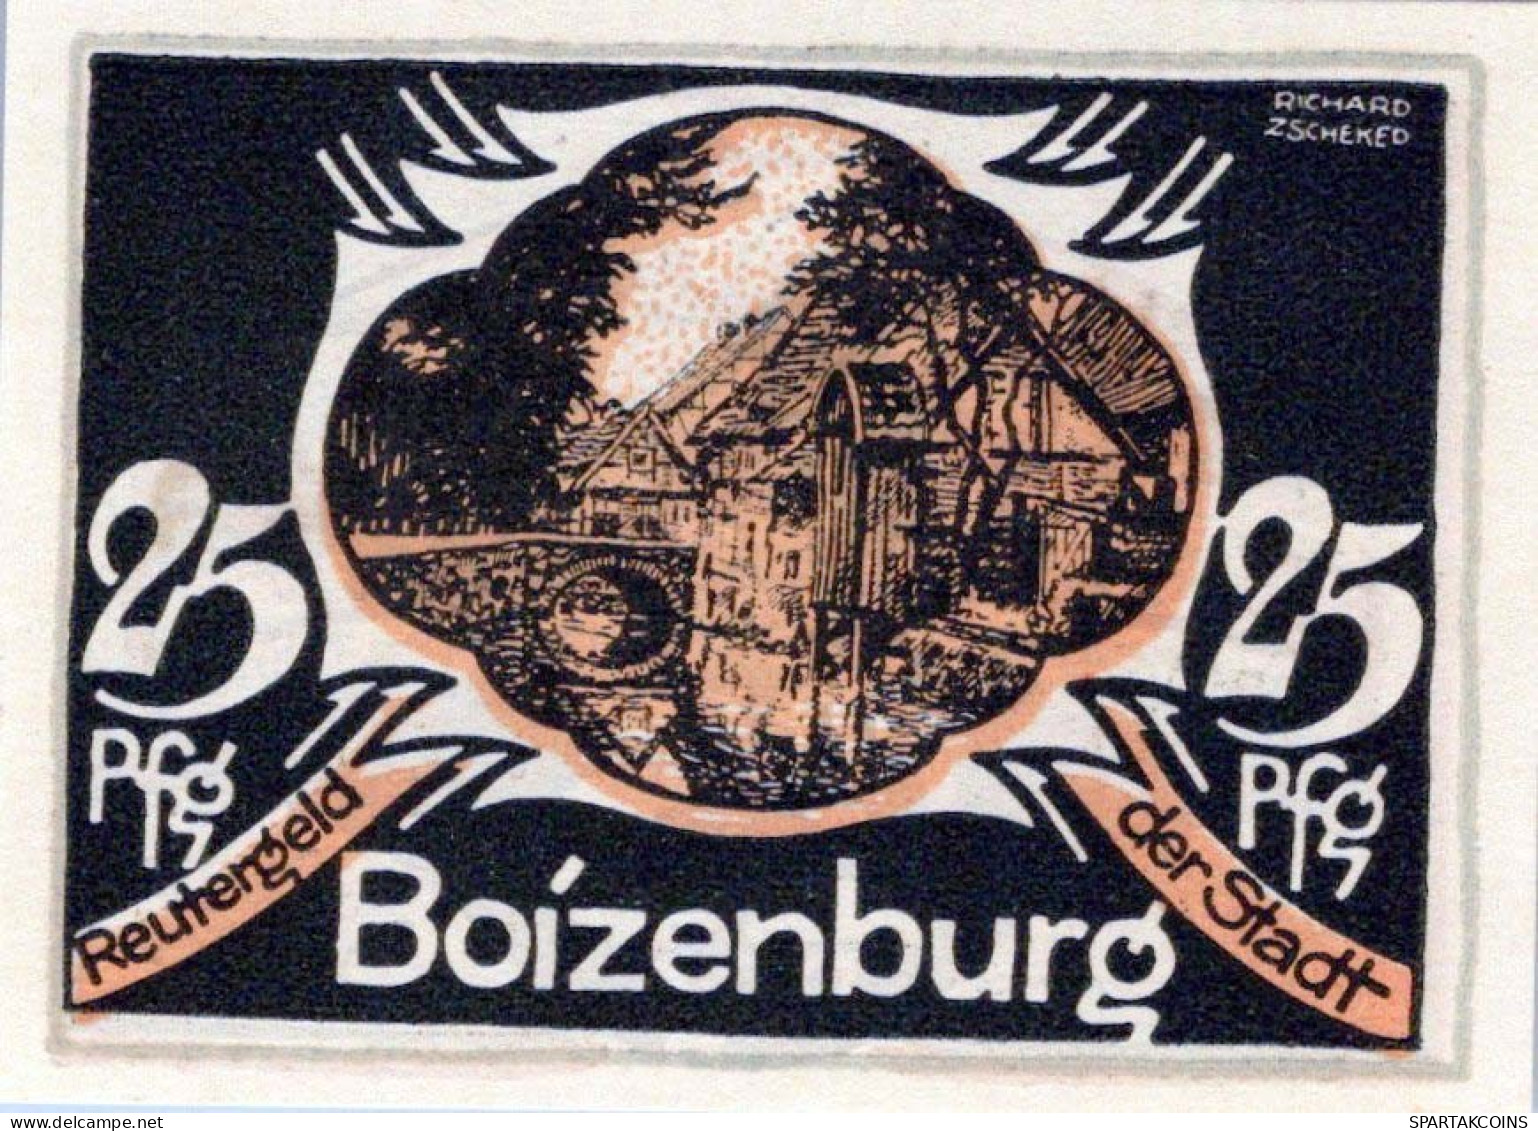 25 PFENNIG 1922 Stadt BOIZENBURG Mecklenburg-Schwerin UNC DEUTSCHLAND #PI496 - [11] Local Banknote Issues